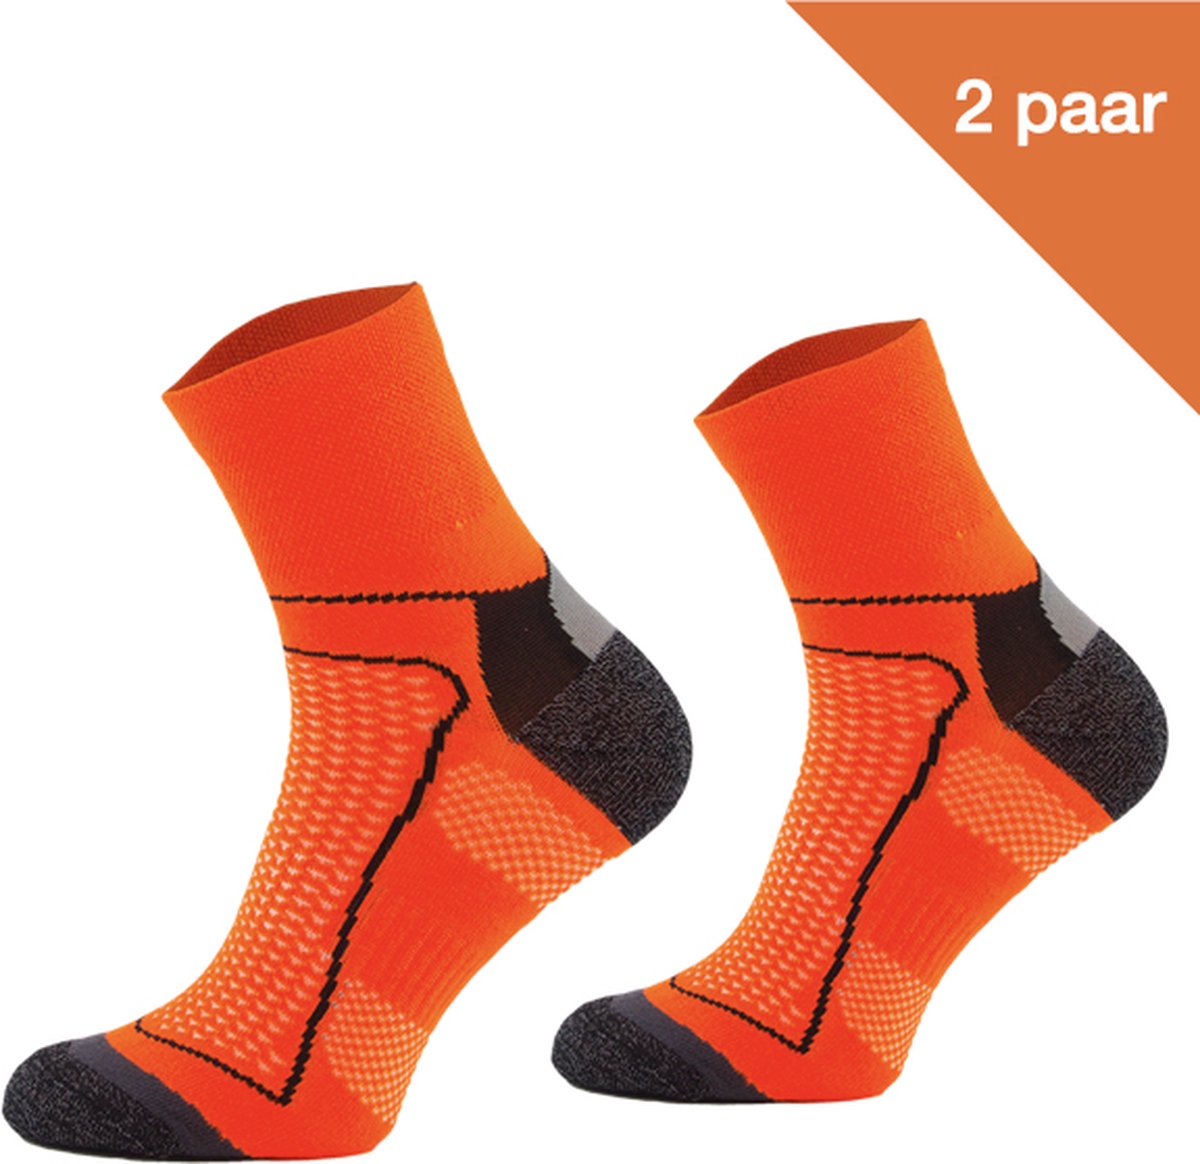 Comodo Fietssokken Polyester BIK1 - Neon oranje - 2 paar - Maat 43-46